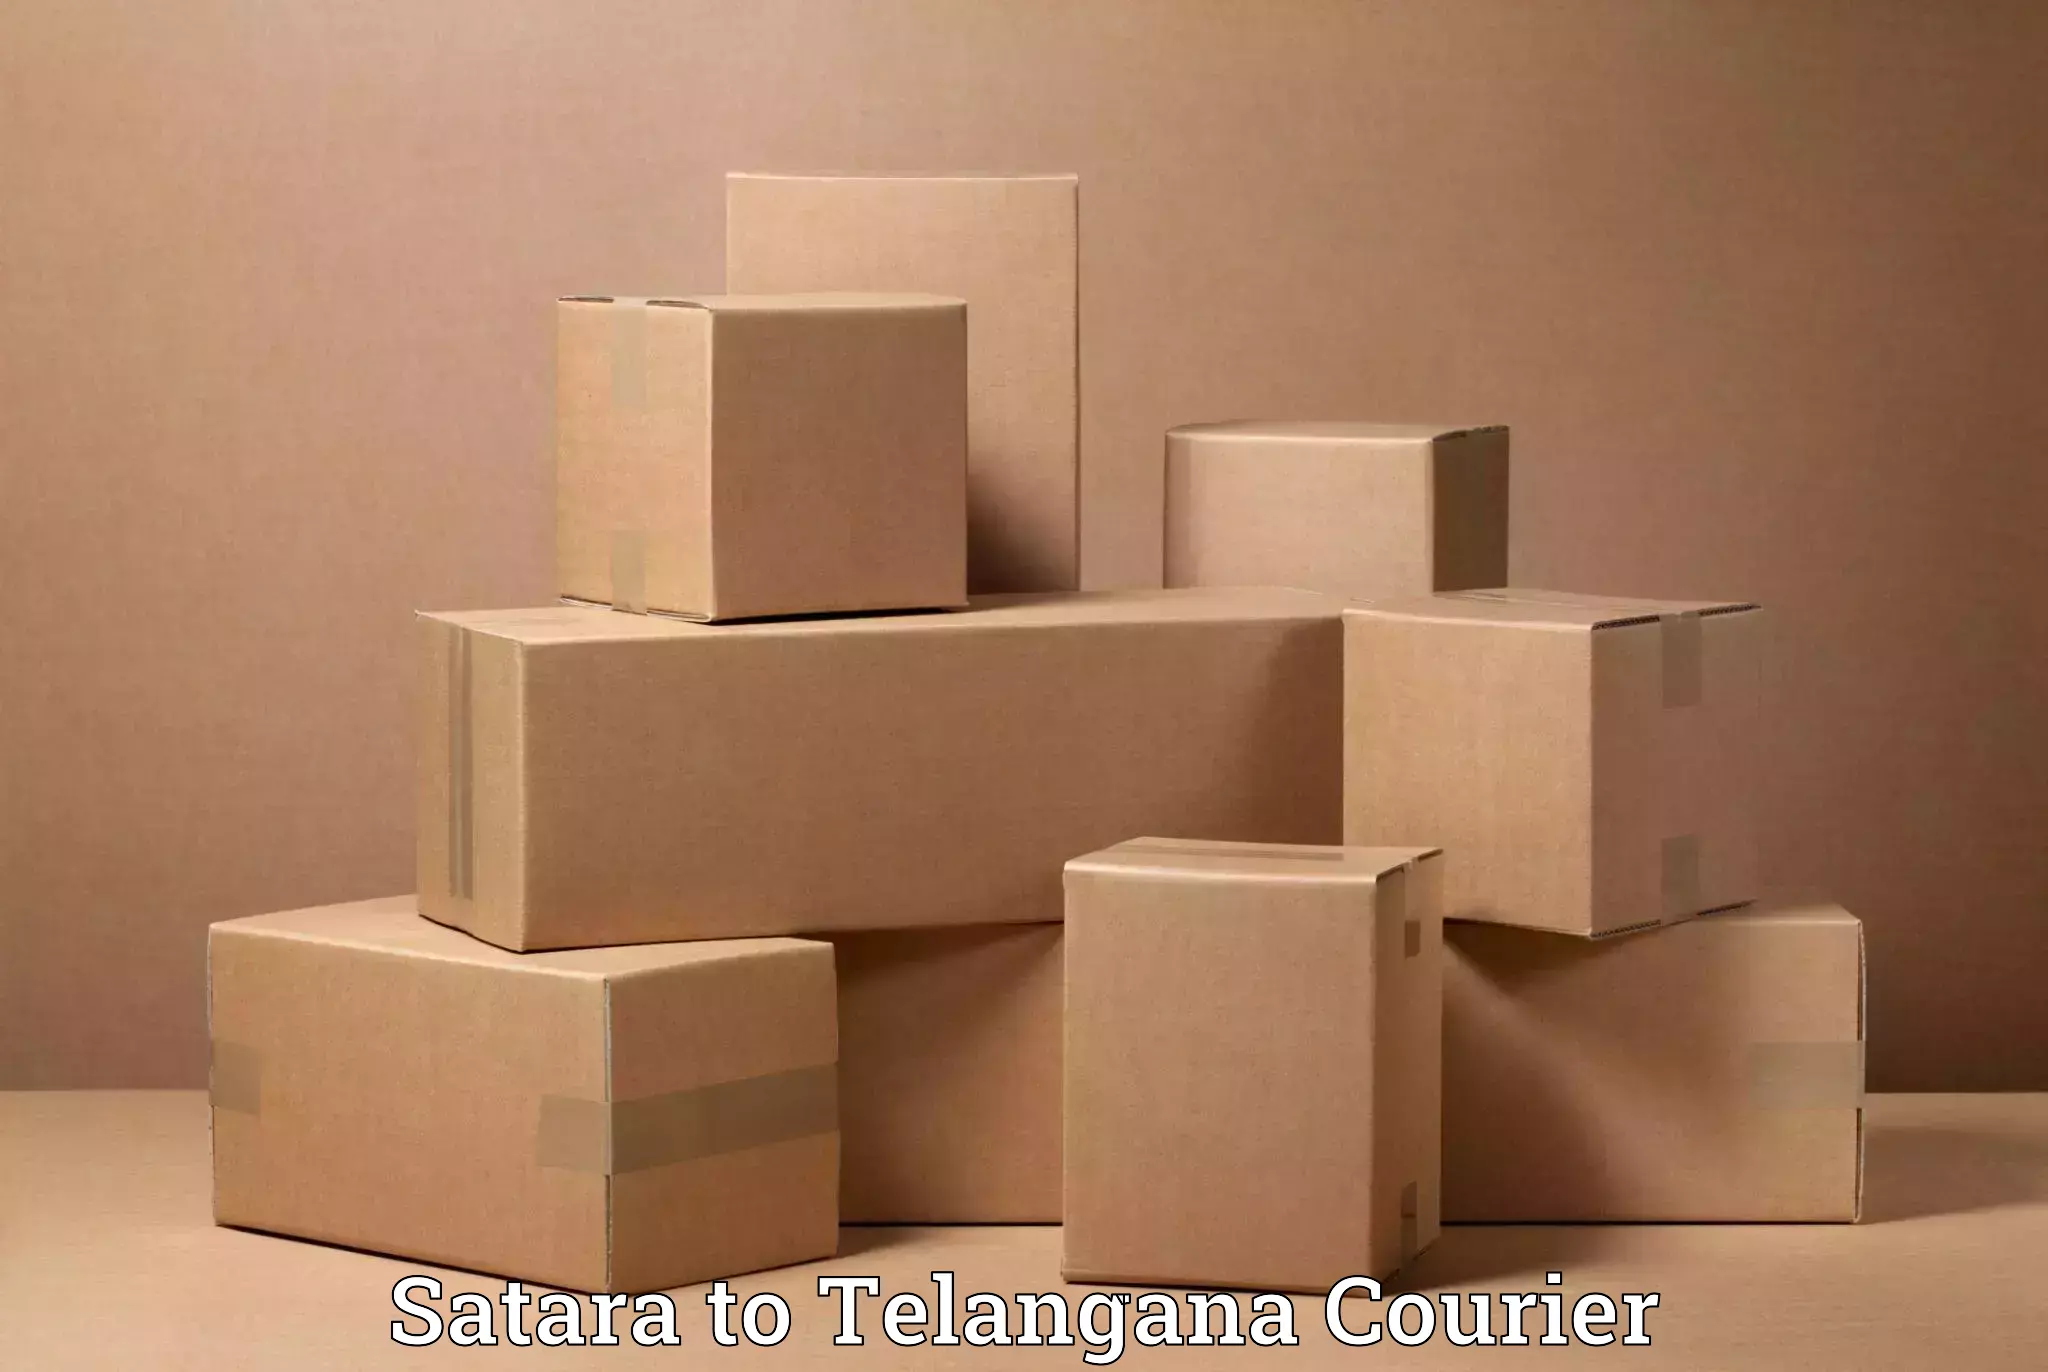 Moving and packing experts Satara to Telangana